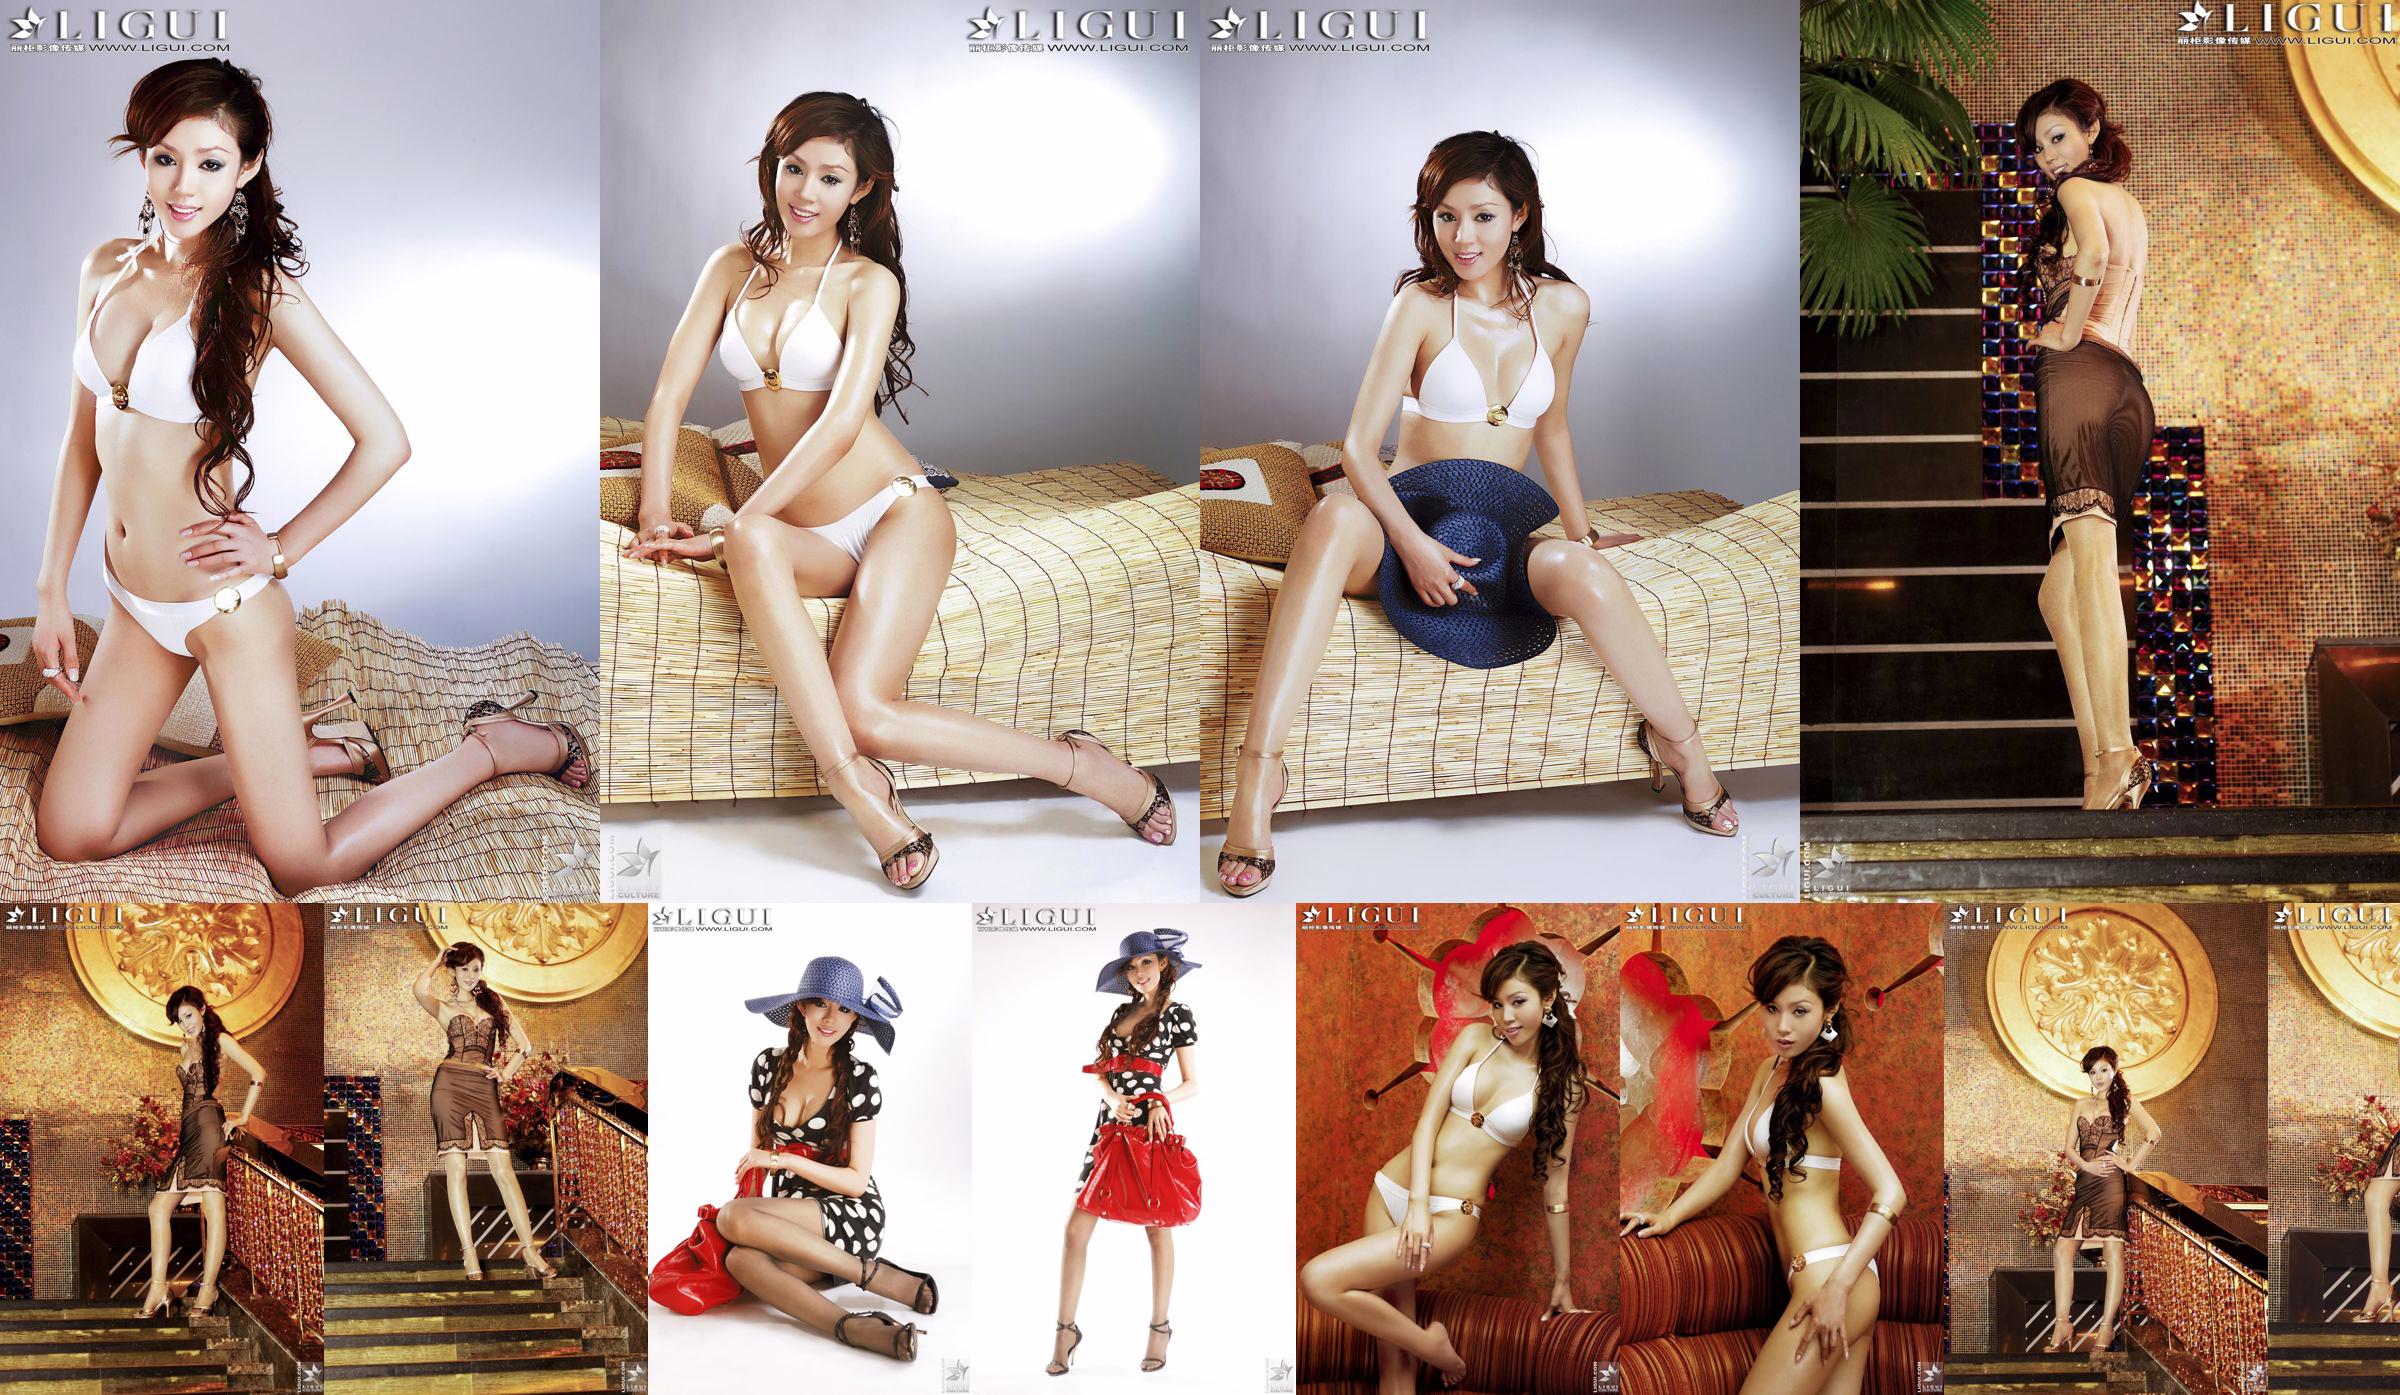 [丽 柜 LiGui] Model Yao Jinjins "Bikini + Kleid" Schöne Beine und seidige Füße Foto Bild No.a8ca71 Seite 2